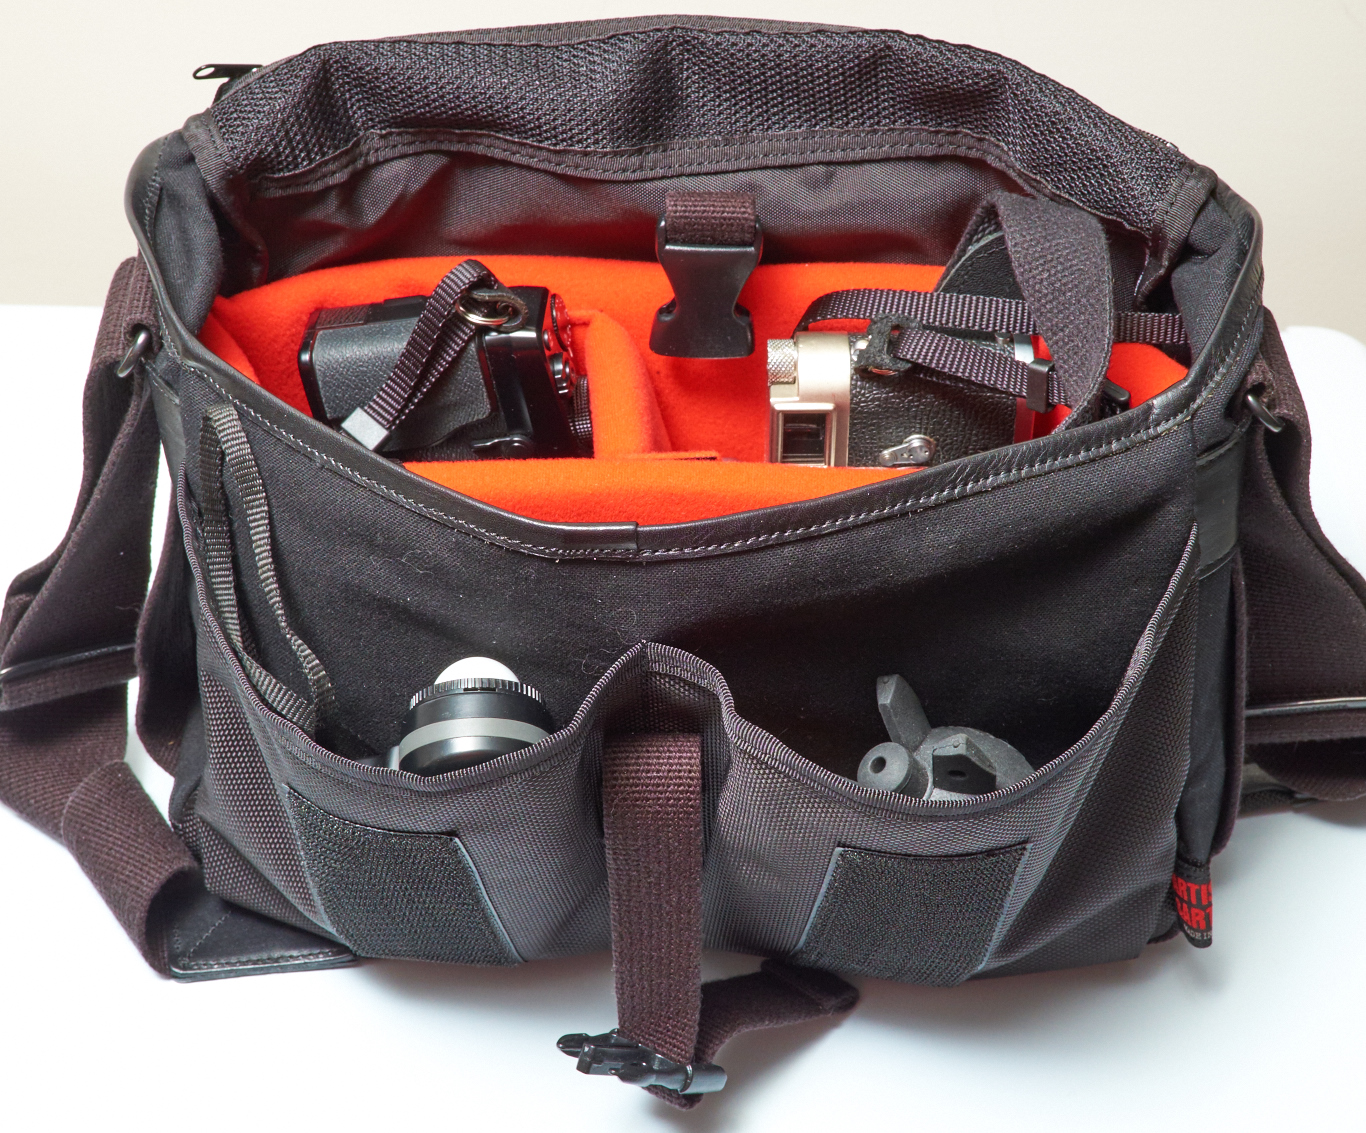 Review: The Artisan & Artist ACAM 7100 Small Camera Bag for the